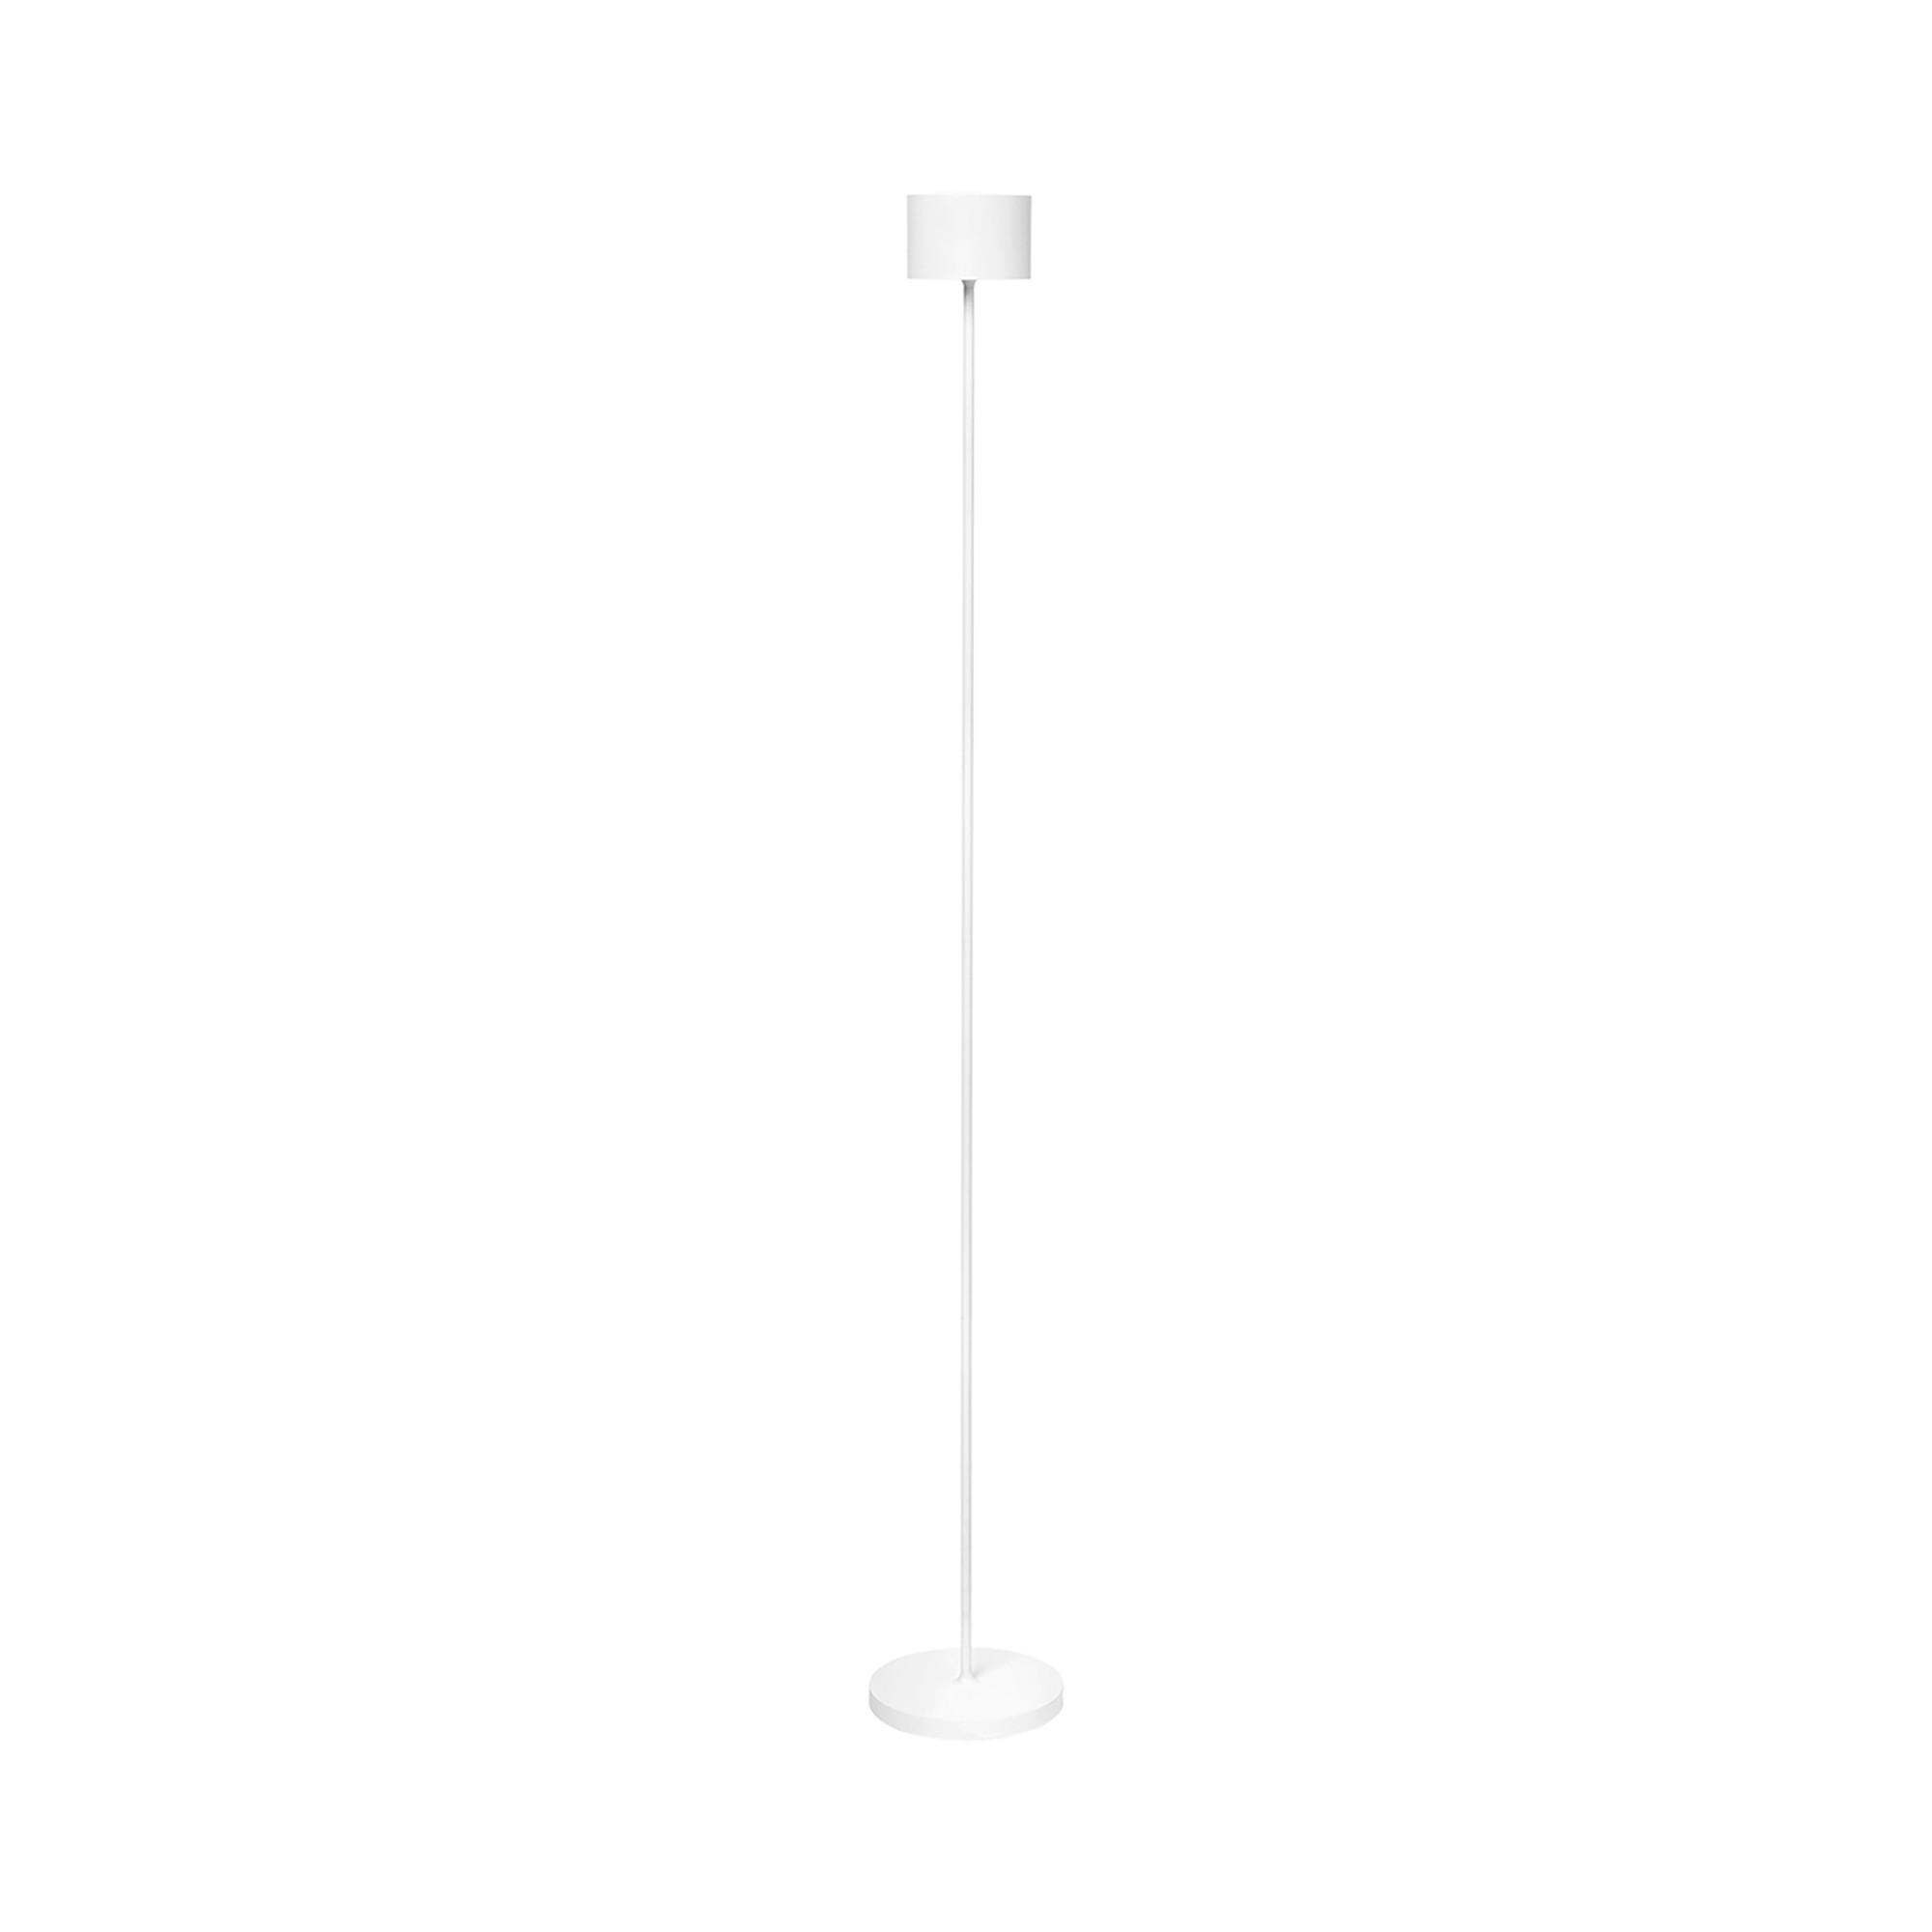 LED-AUßENLEUCHTE  - Weiß, Design, Metall (15/115cm) - Blomus